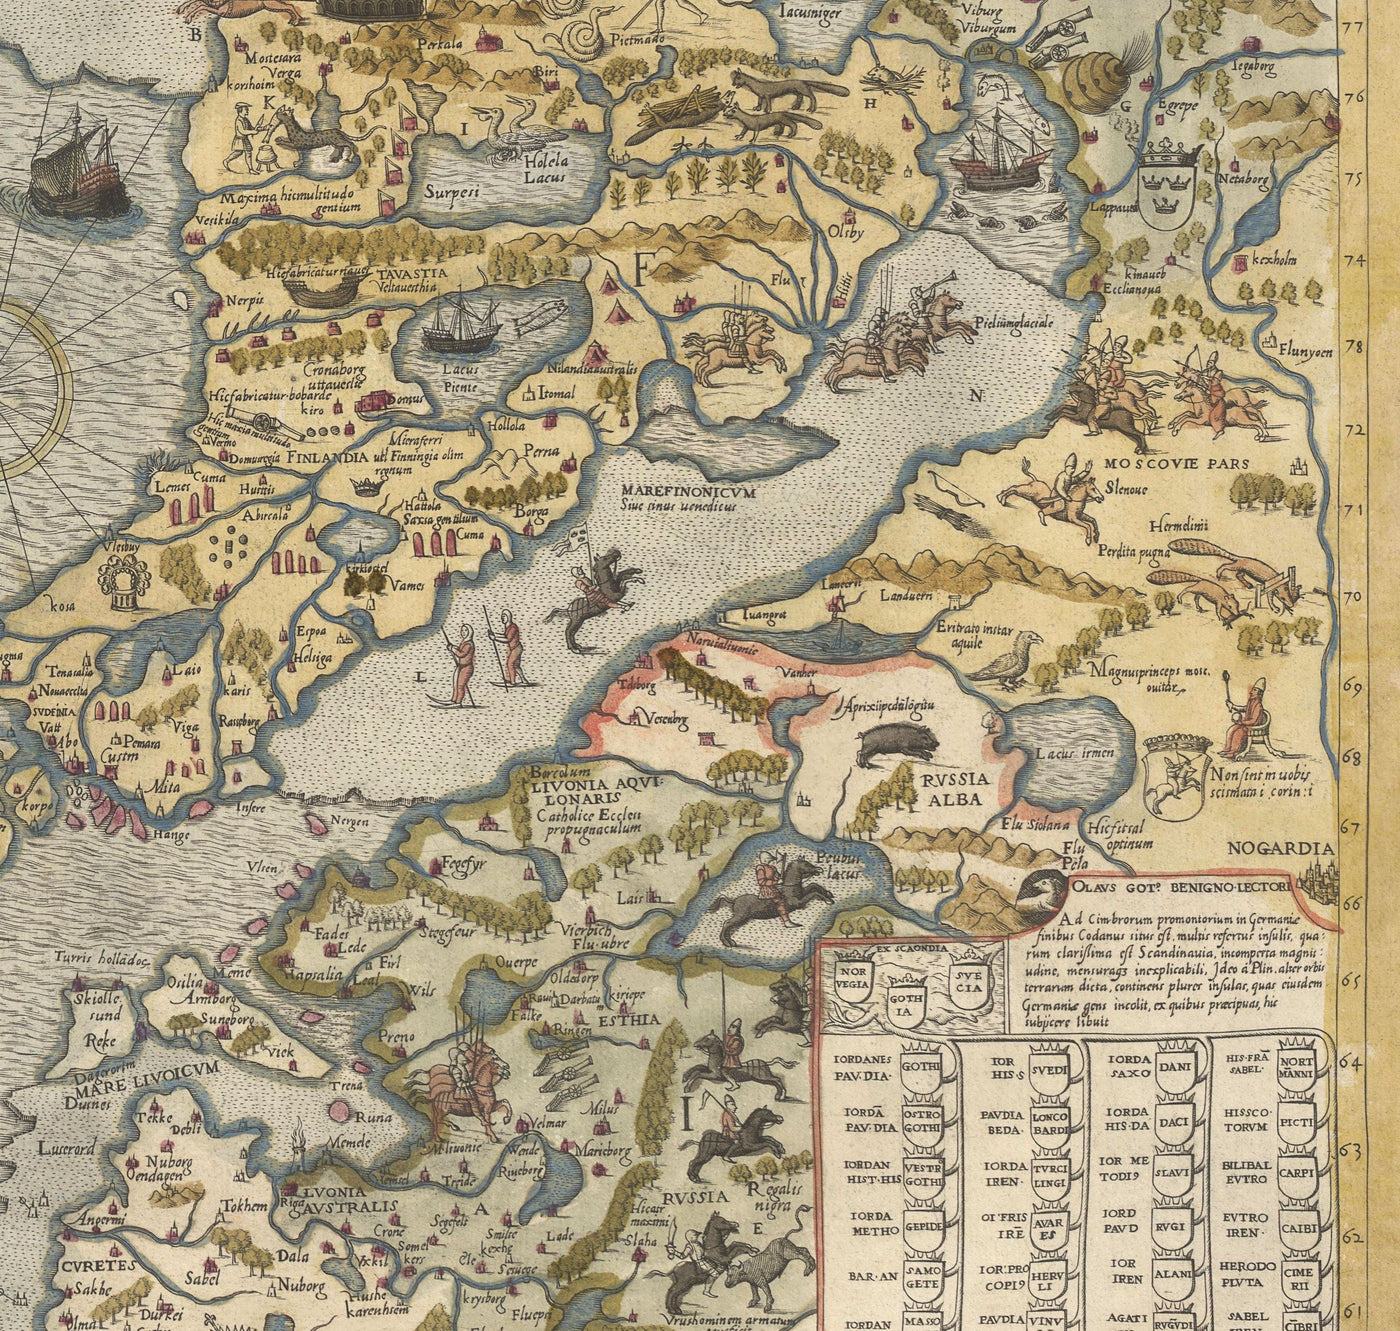 Alte Karte von Skandinavien, 1539 - Carta Marina von Olaus Magnus - Sea Monster Map - Nordic Länder Dänemark, Schweden, Finnland